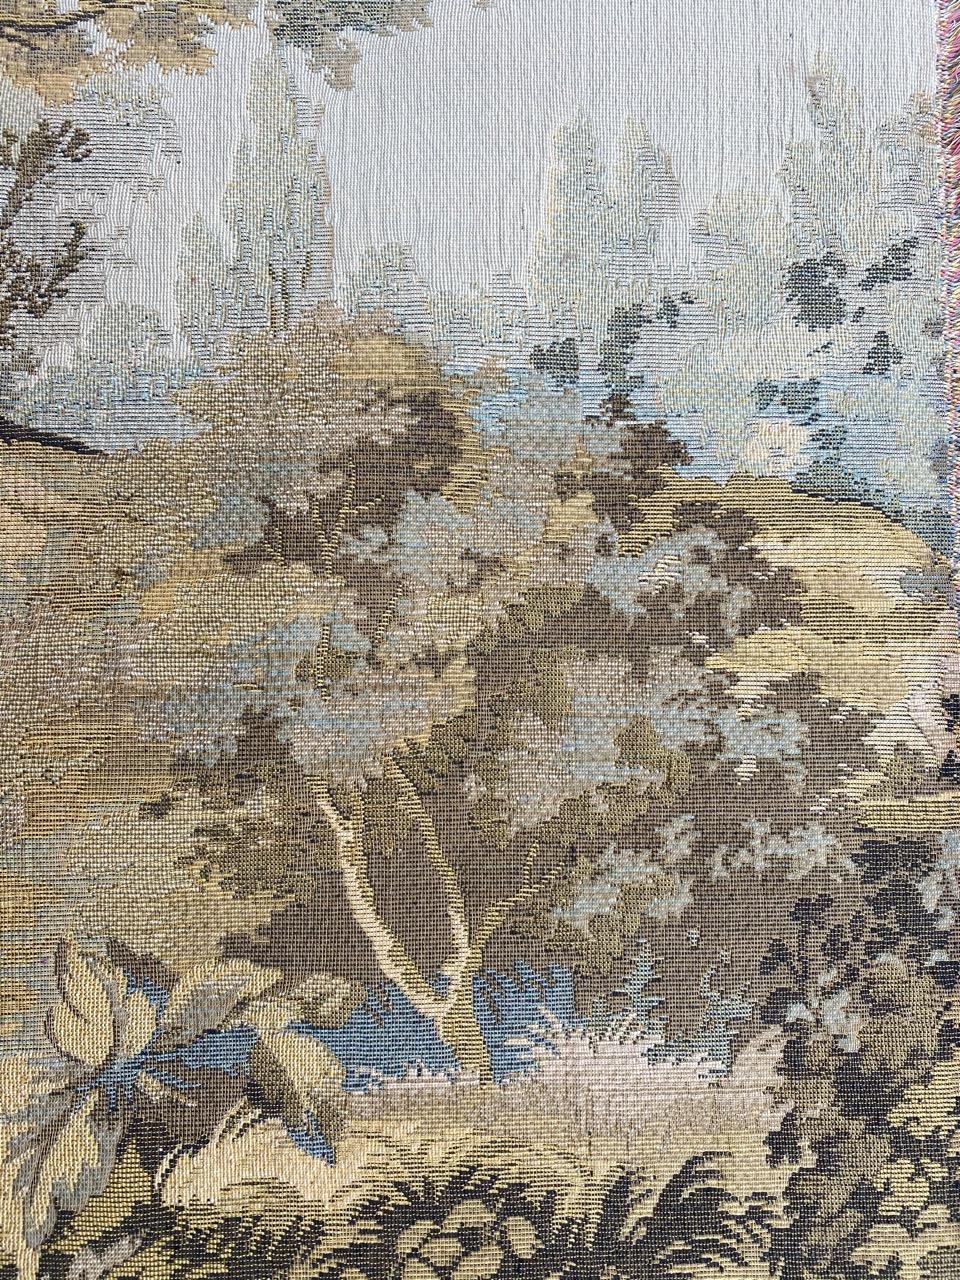 Vintage French Jaquar Tapestry 1